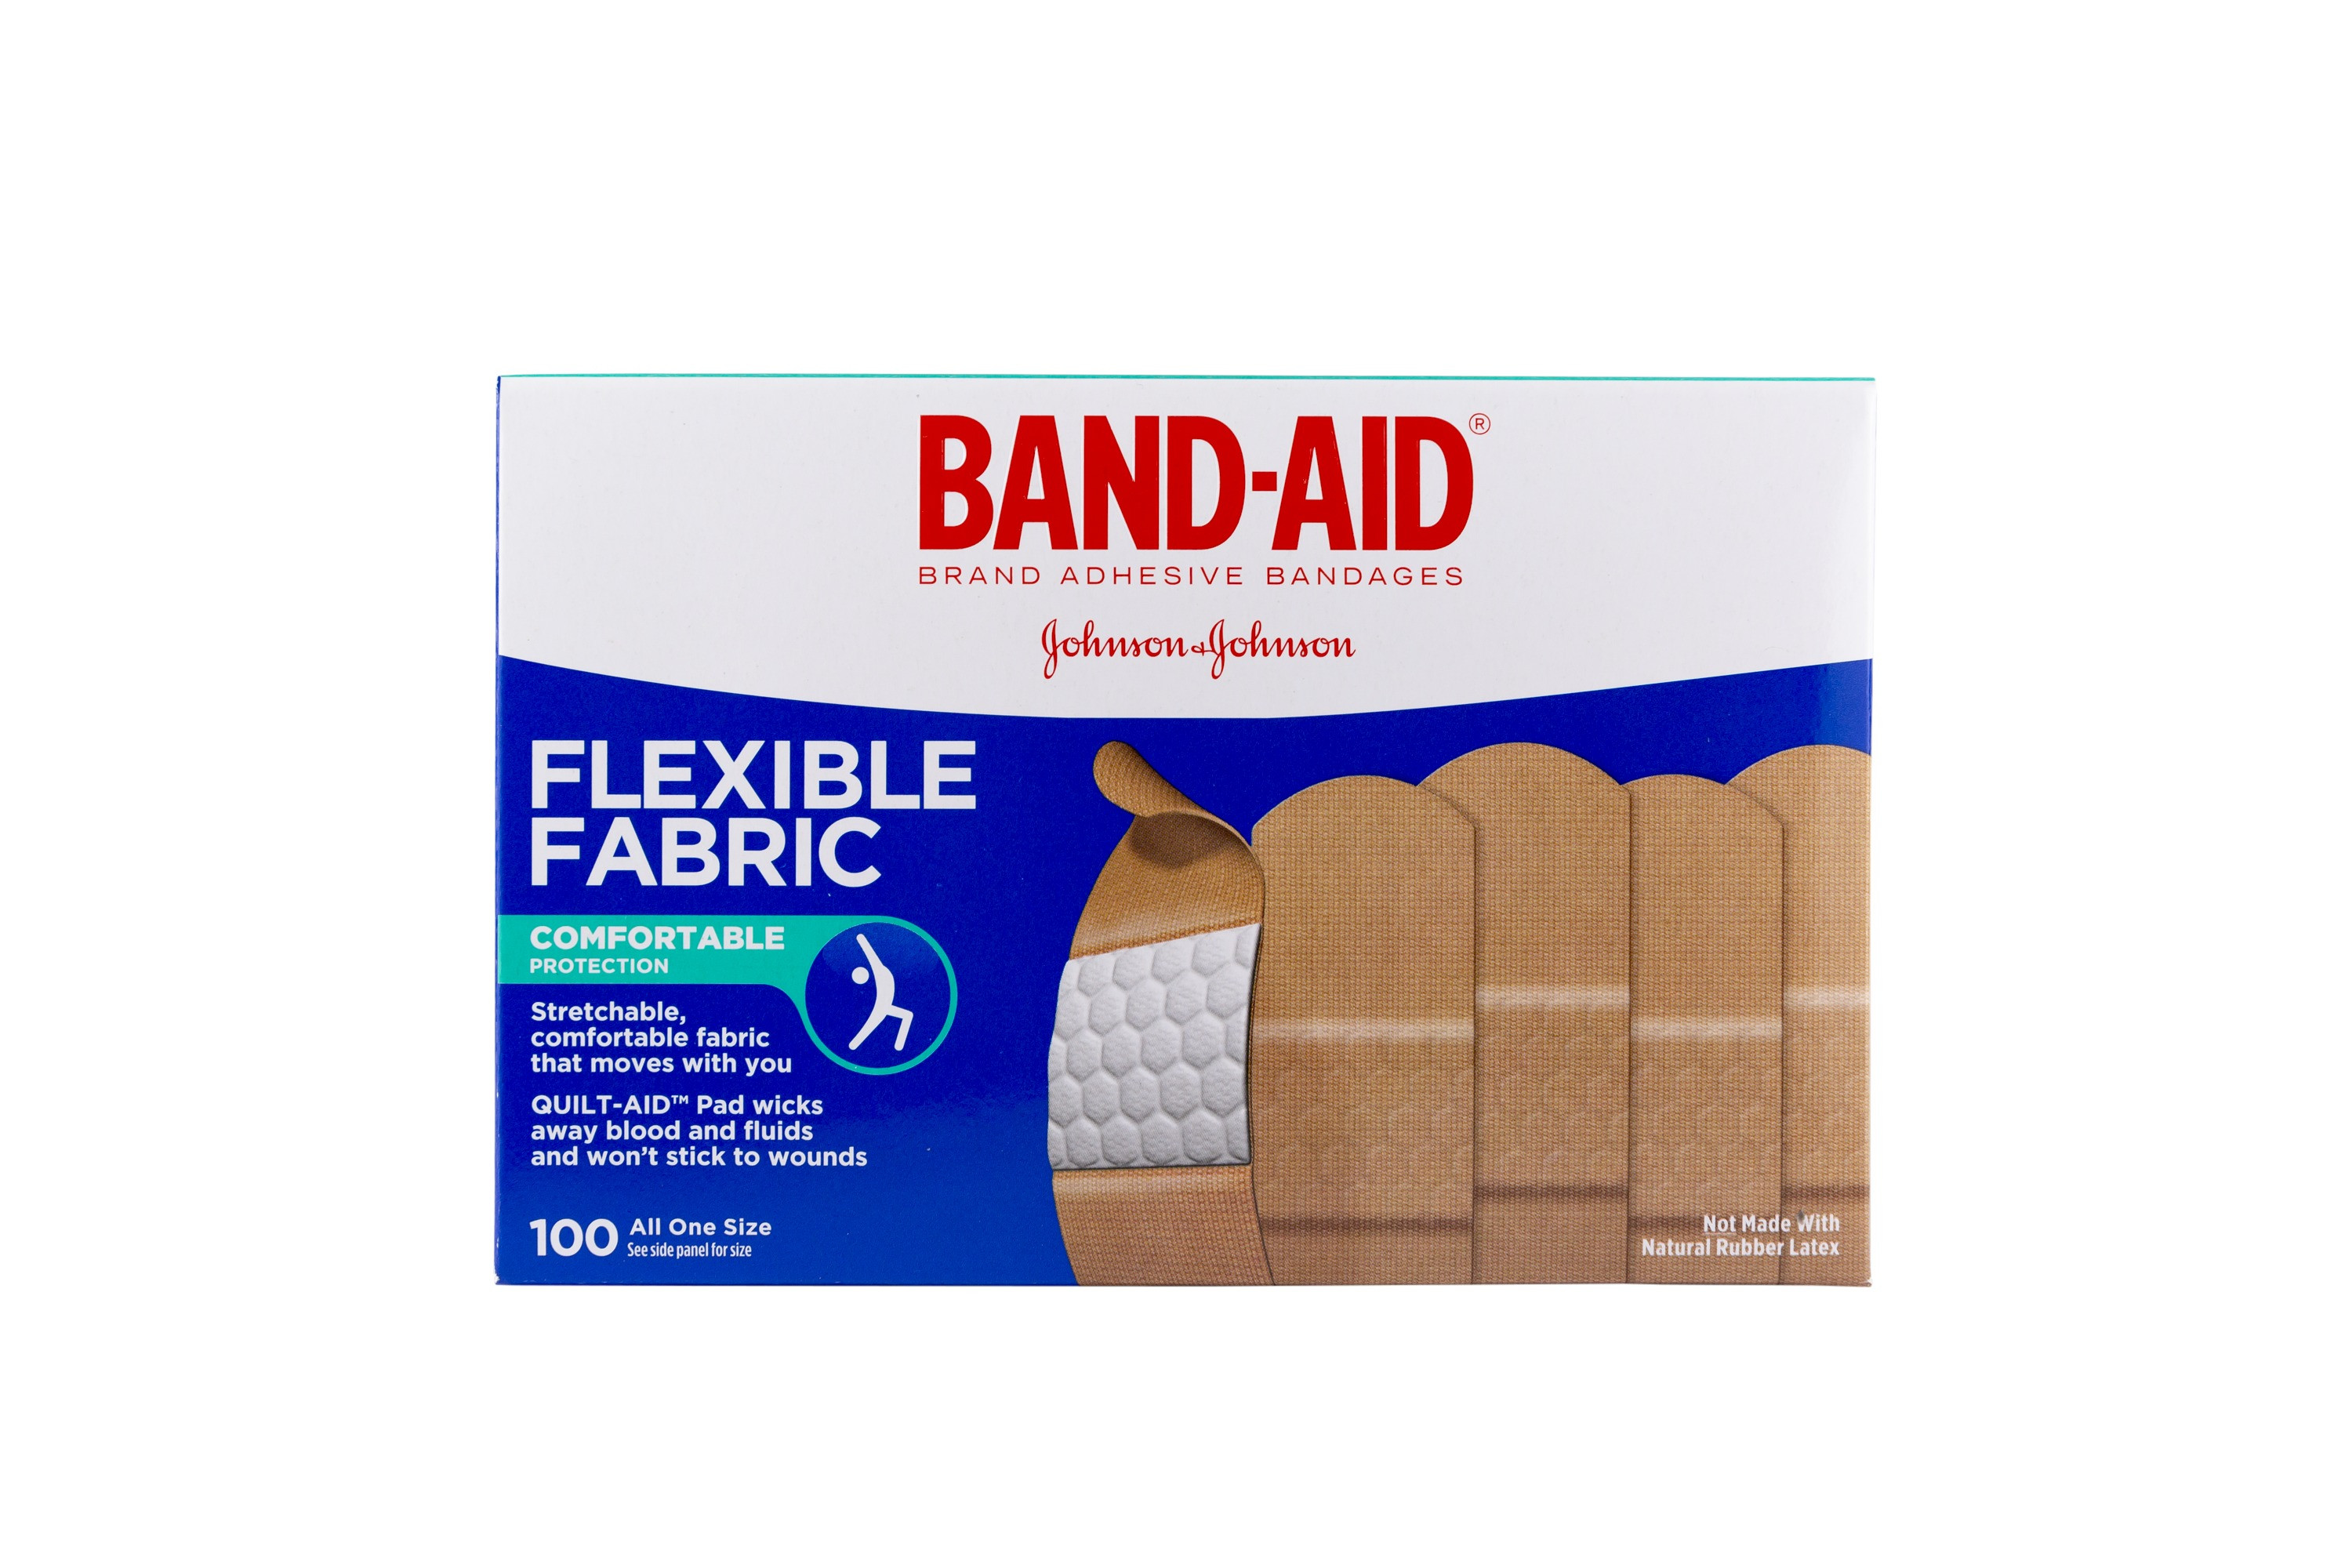 Band-Aid® Brand Flexible Fabric Assorted Sizes Adhesive Bandages 39 ct Box, Bandages